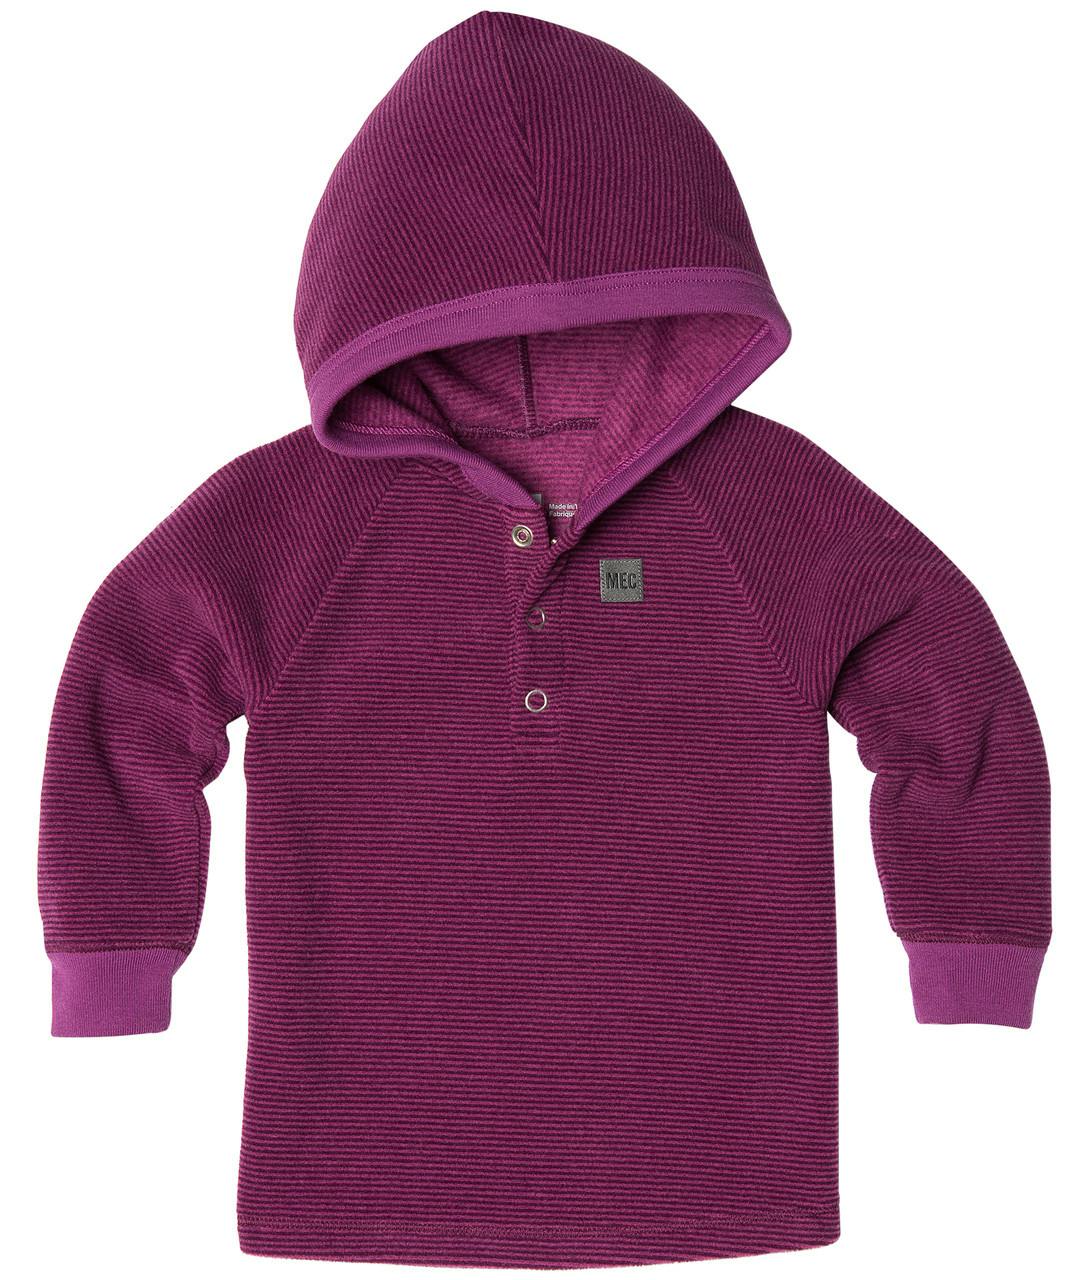 Bambini Pullover Petunia-Potent Purple Pic